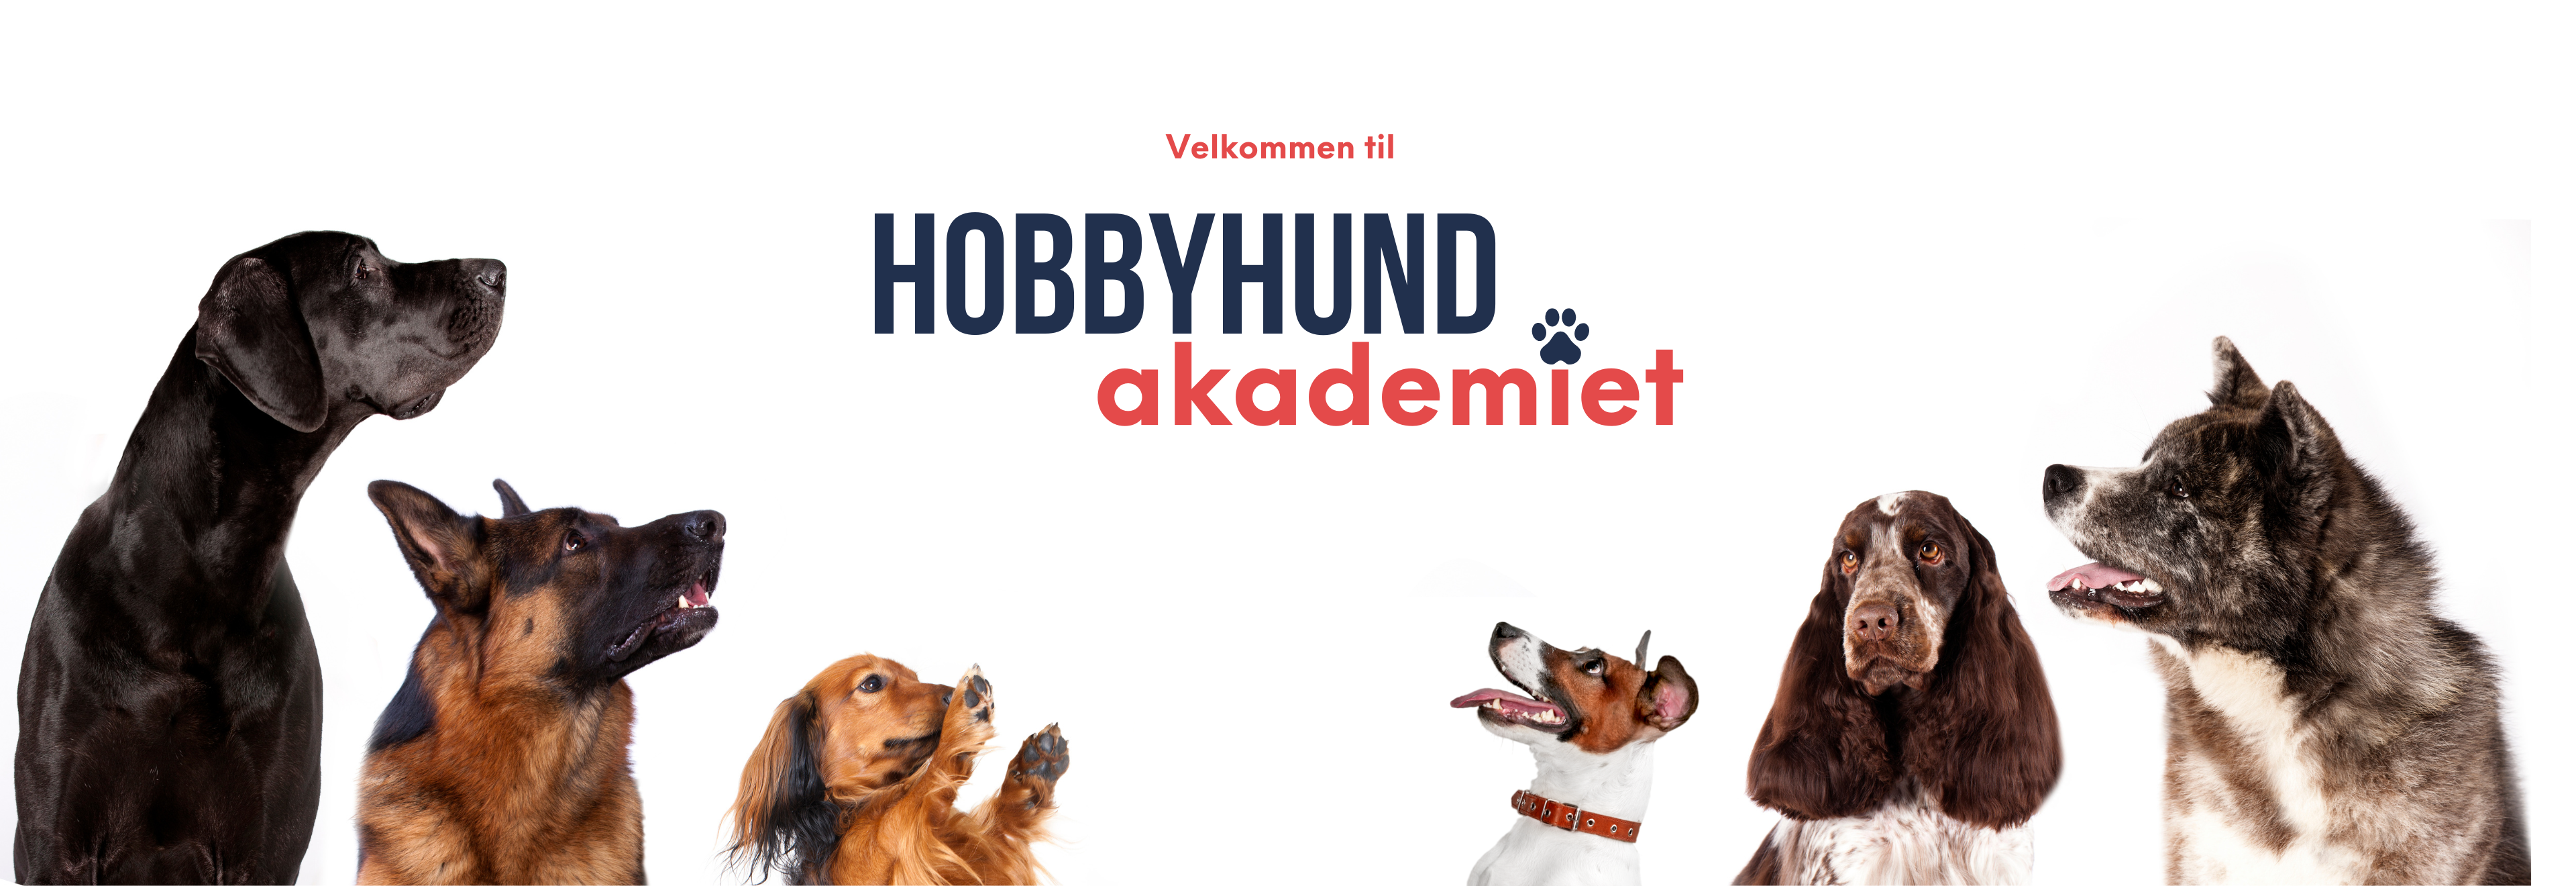 hobbyhund akademiet forside banner hundetrening online kurs